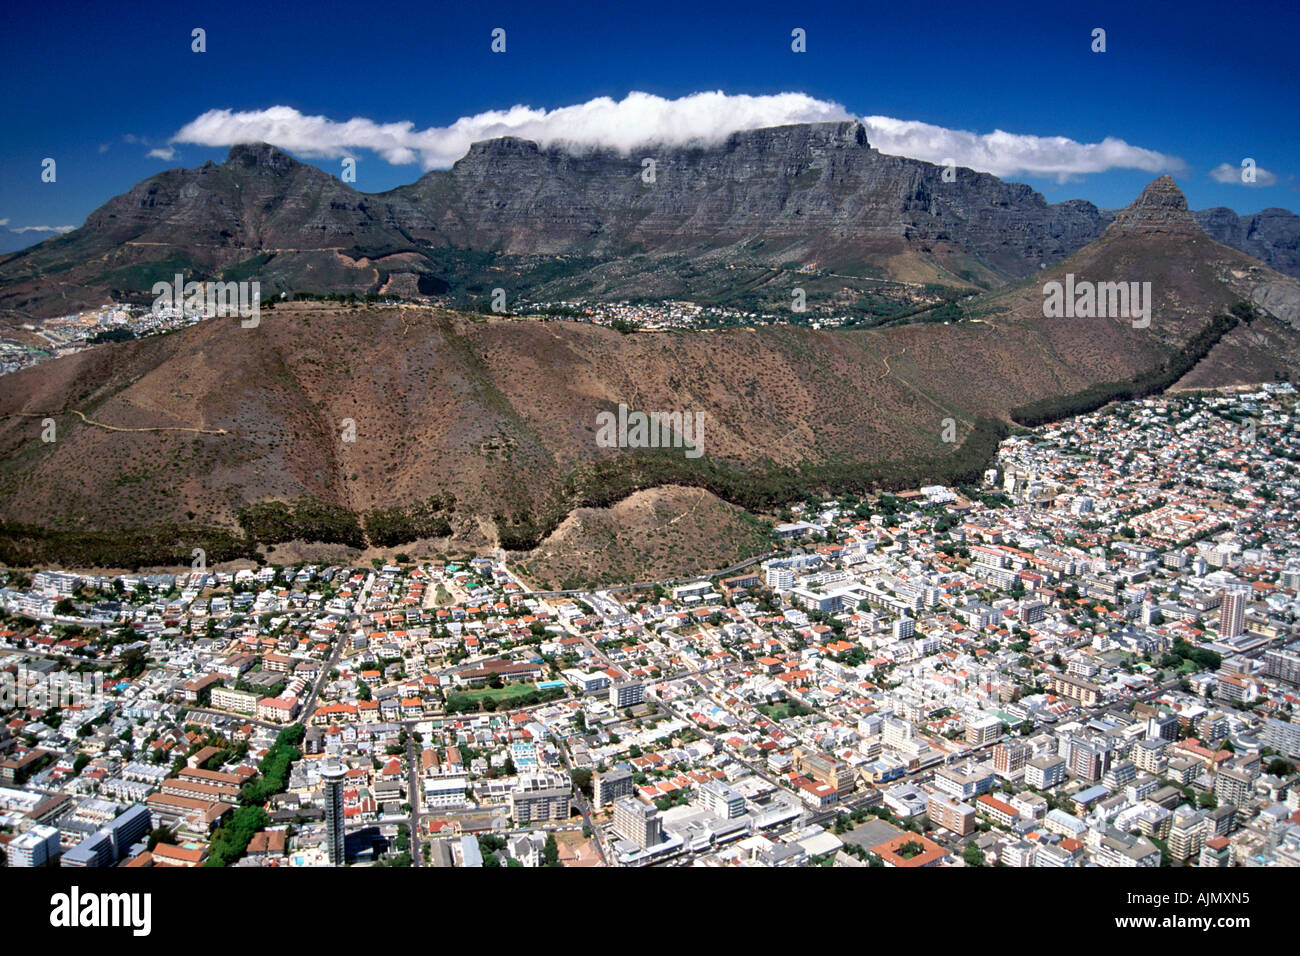 Una veduta aerea del litorale atlantico della periferia di Città del Capo ai piedi della Montagna della Tavola in Sud Africa. Foto Stock